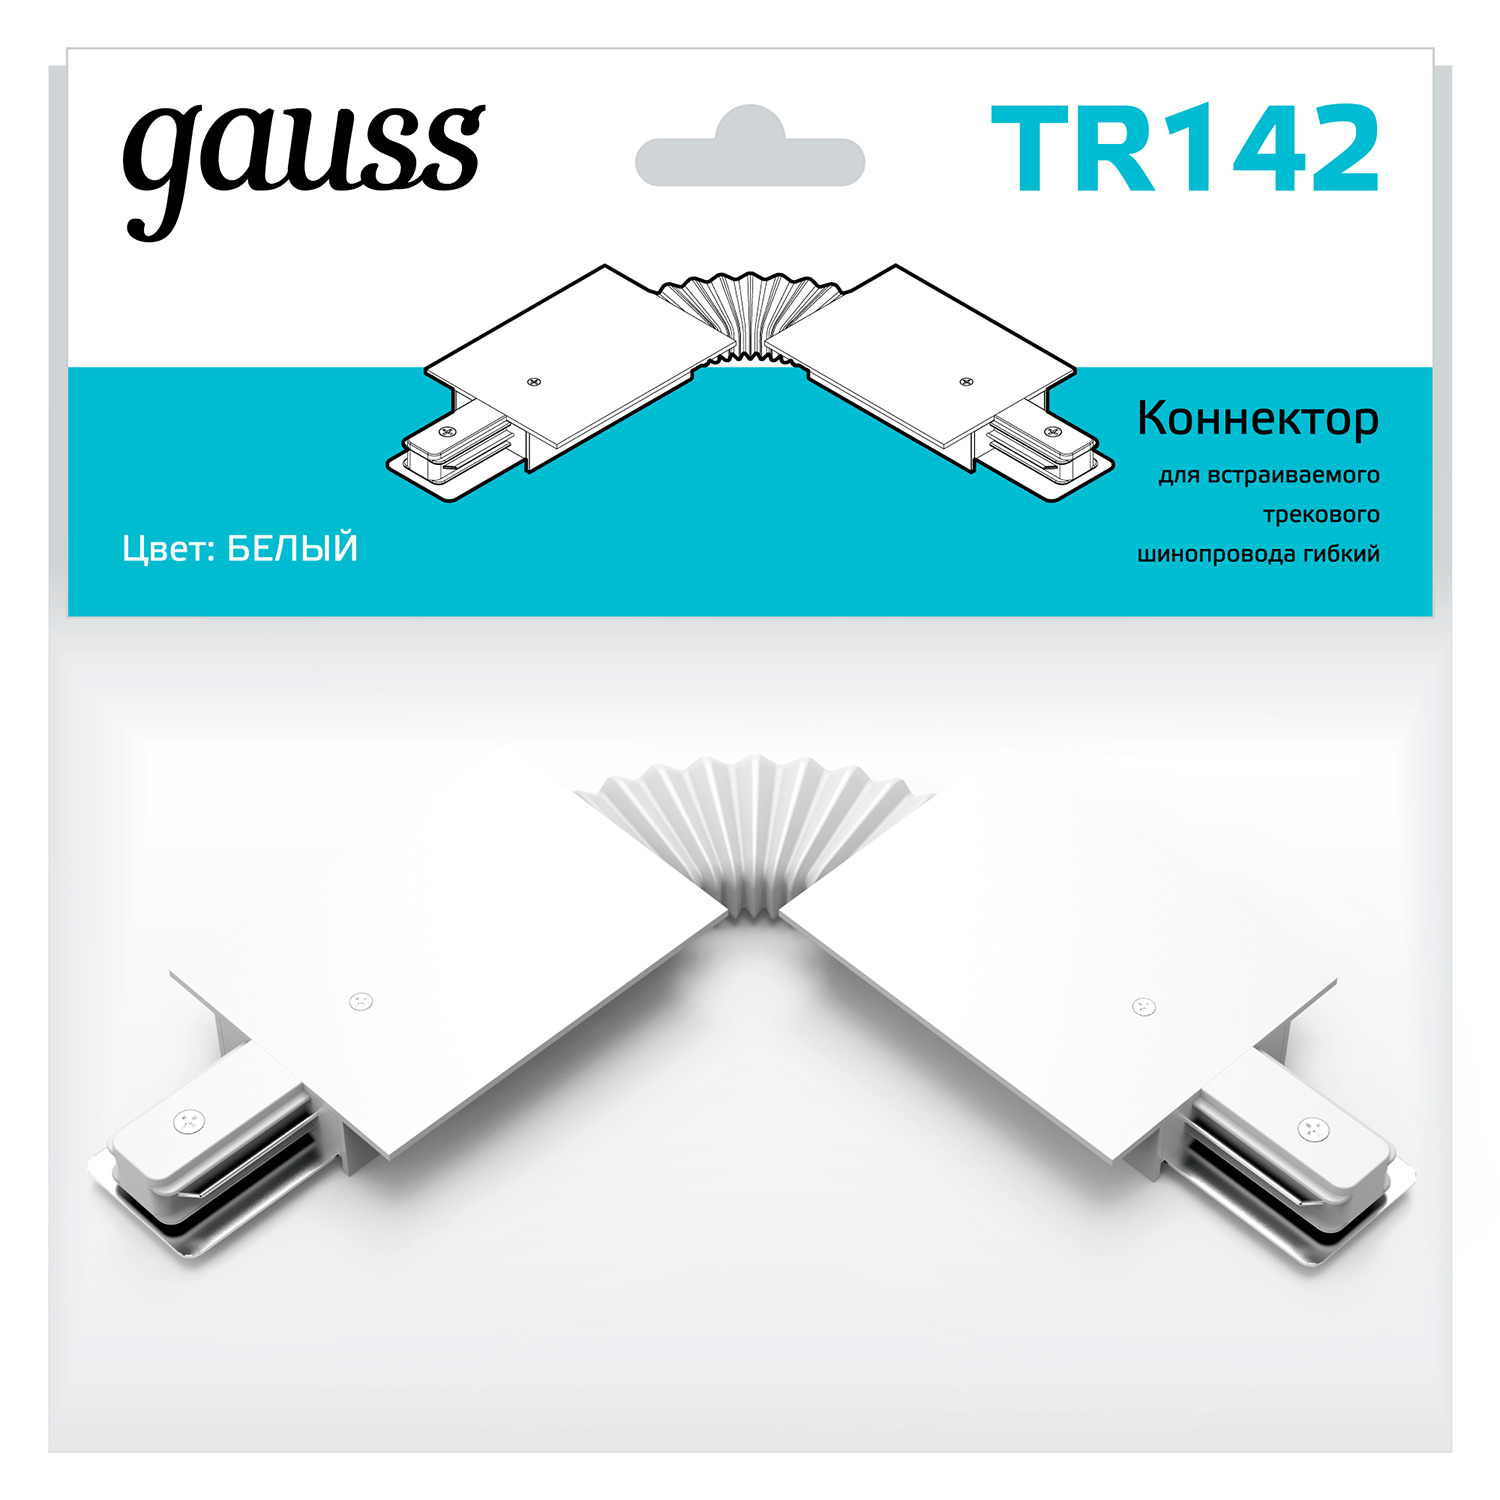 Коннектор Gauss для встраиваемых трековых шинопроводов гибкий (I) белый коннектор gauss для встраиваемых трековых шинопроводов гибкий i белый